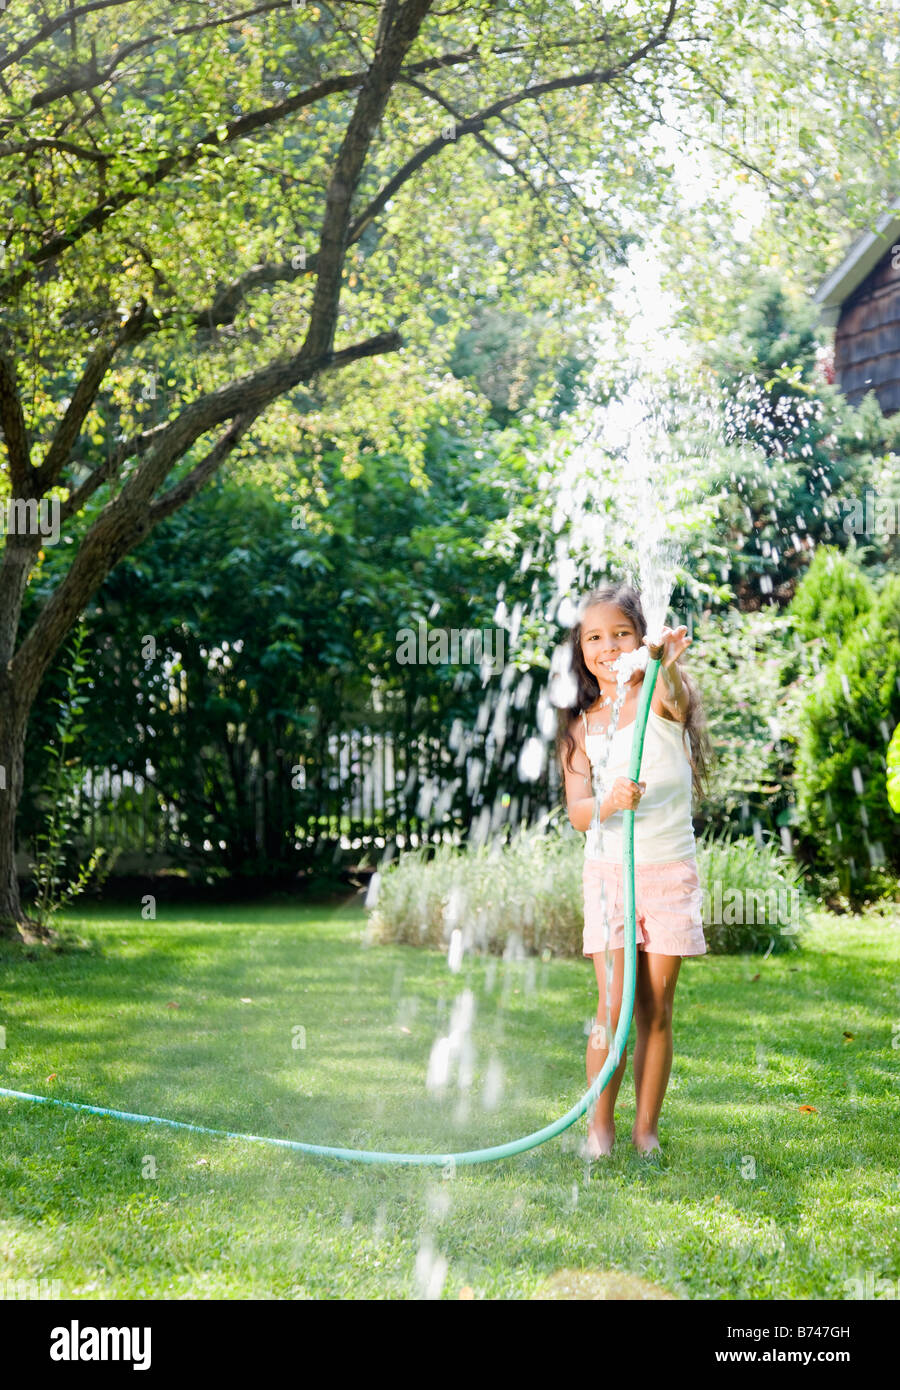 Hispanic girl squirting hose Stock Photo